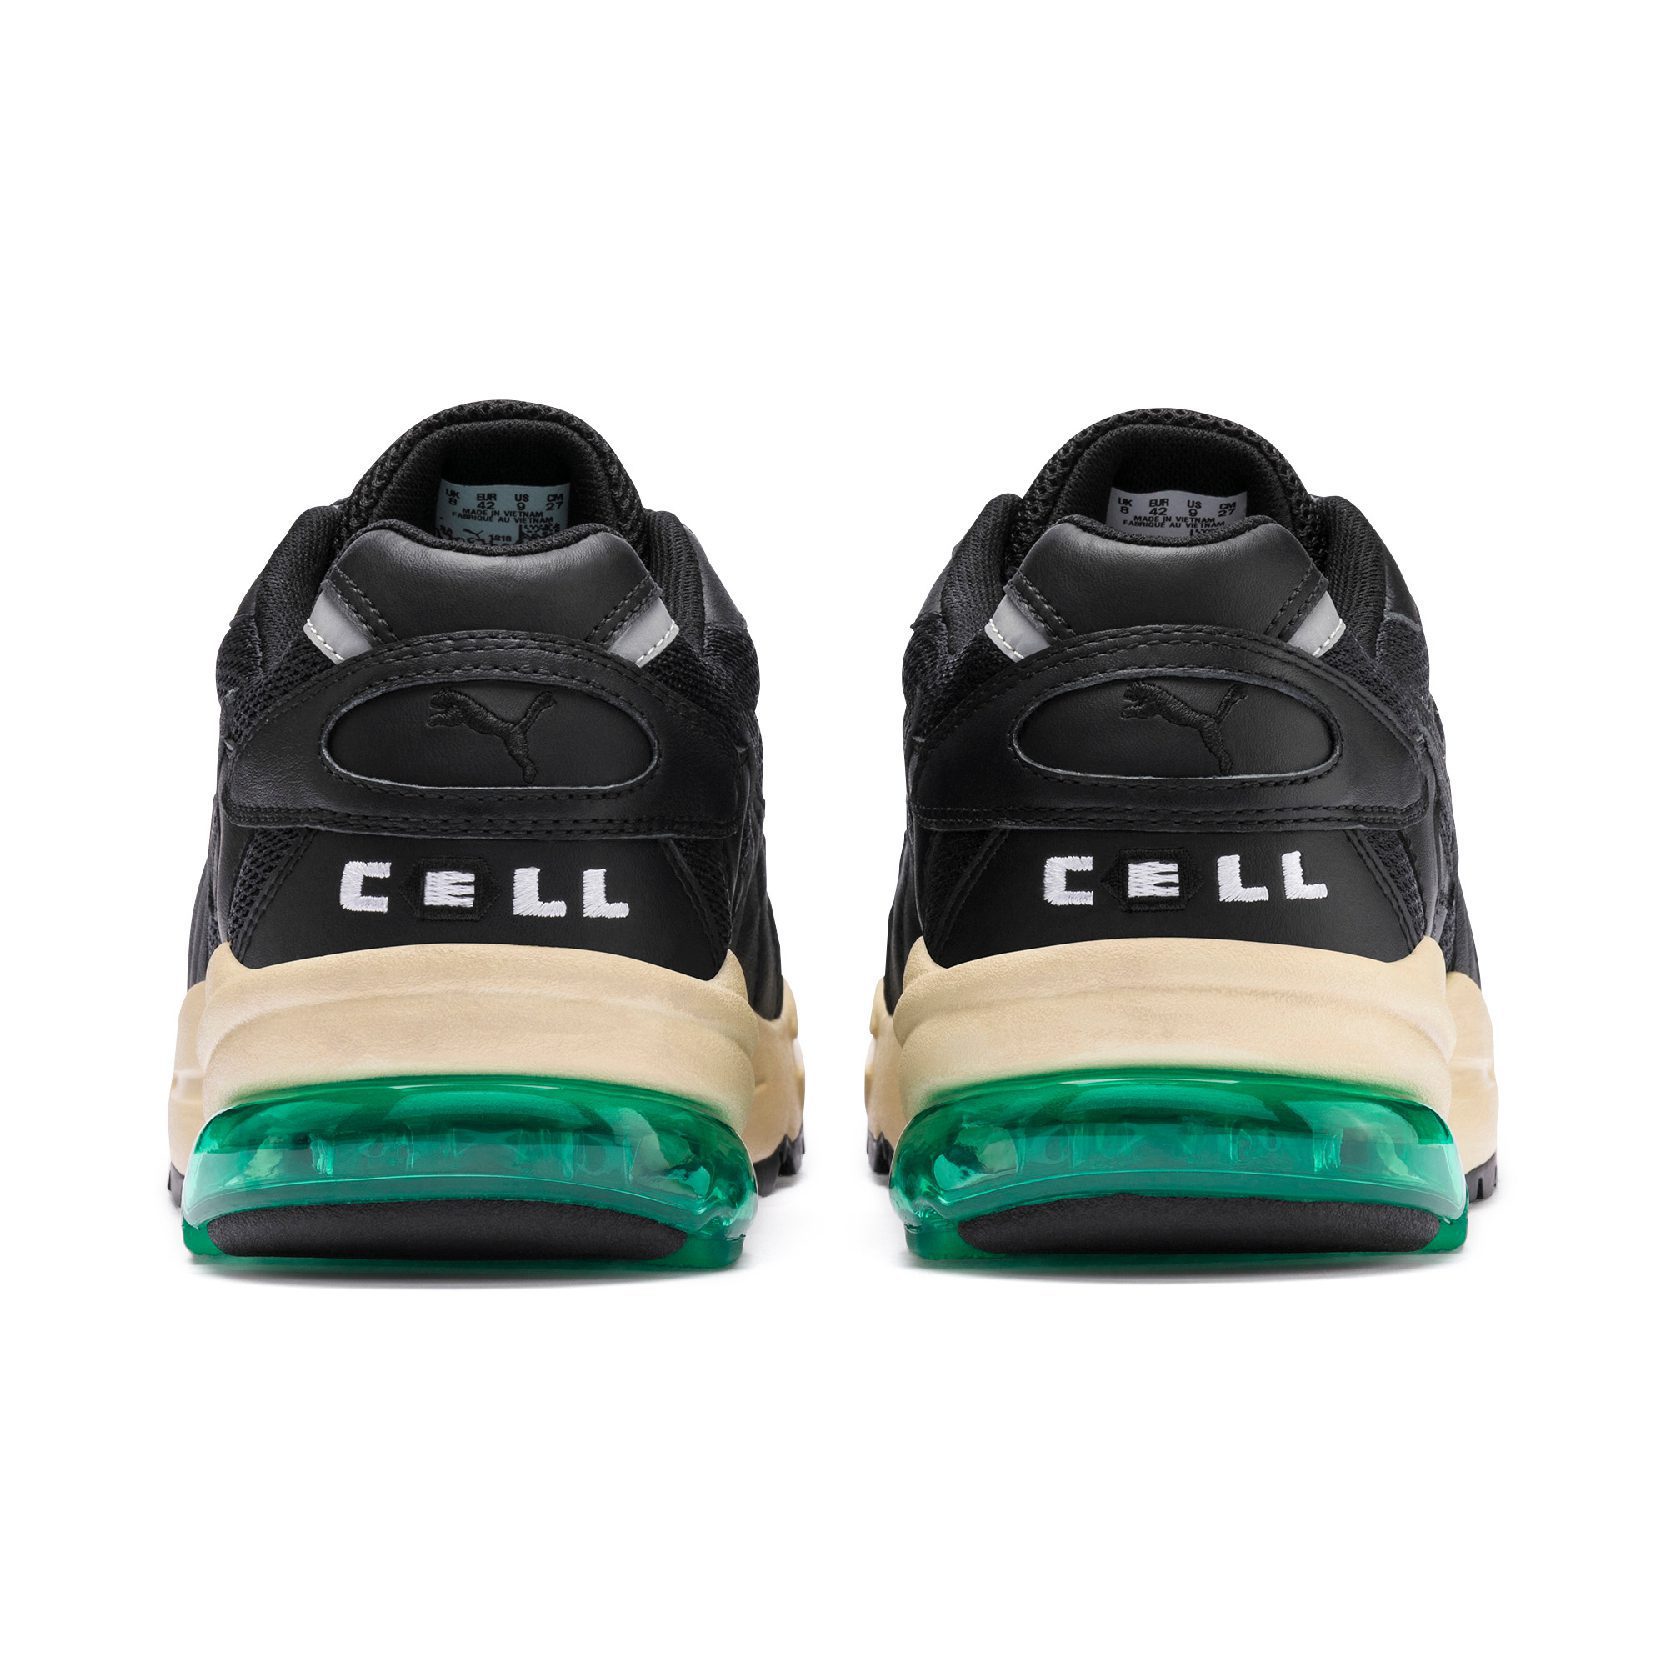 puma x rhude cell alien sneakers